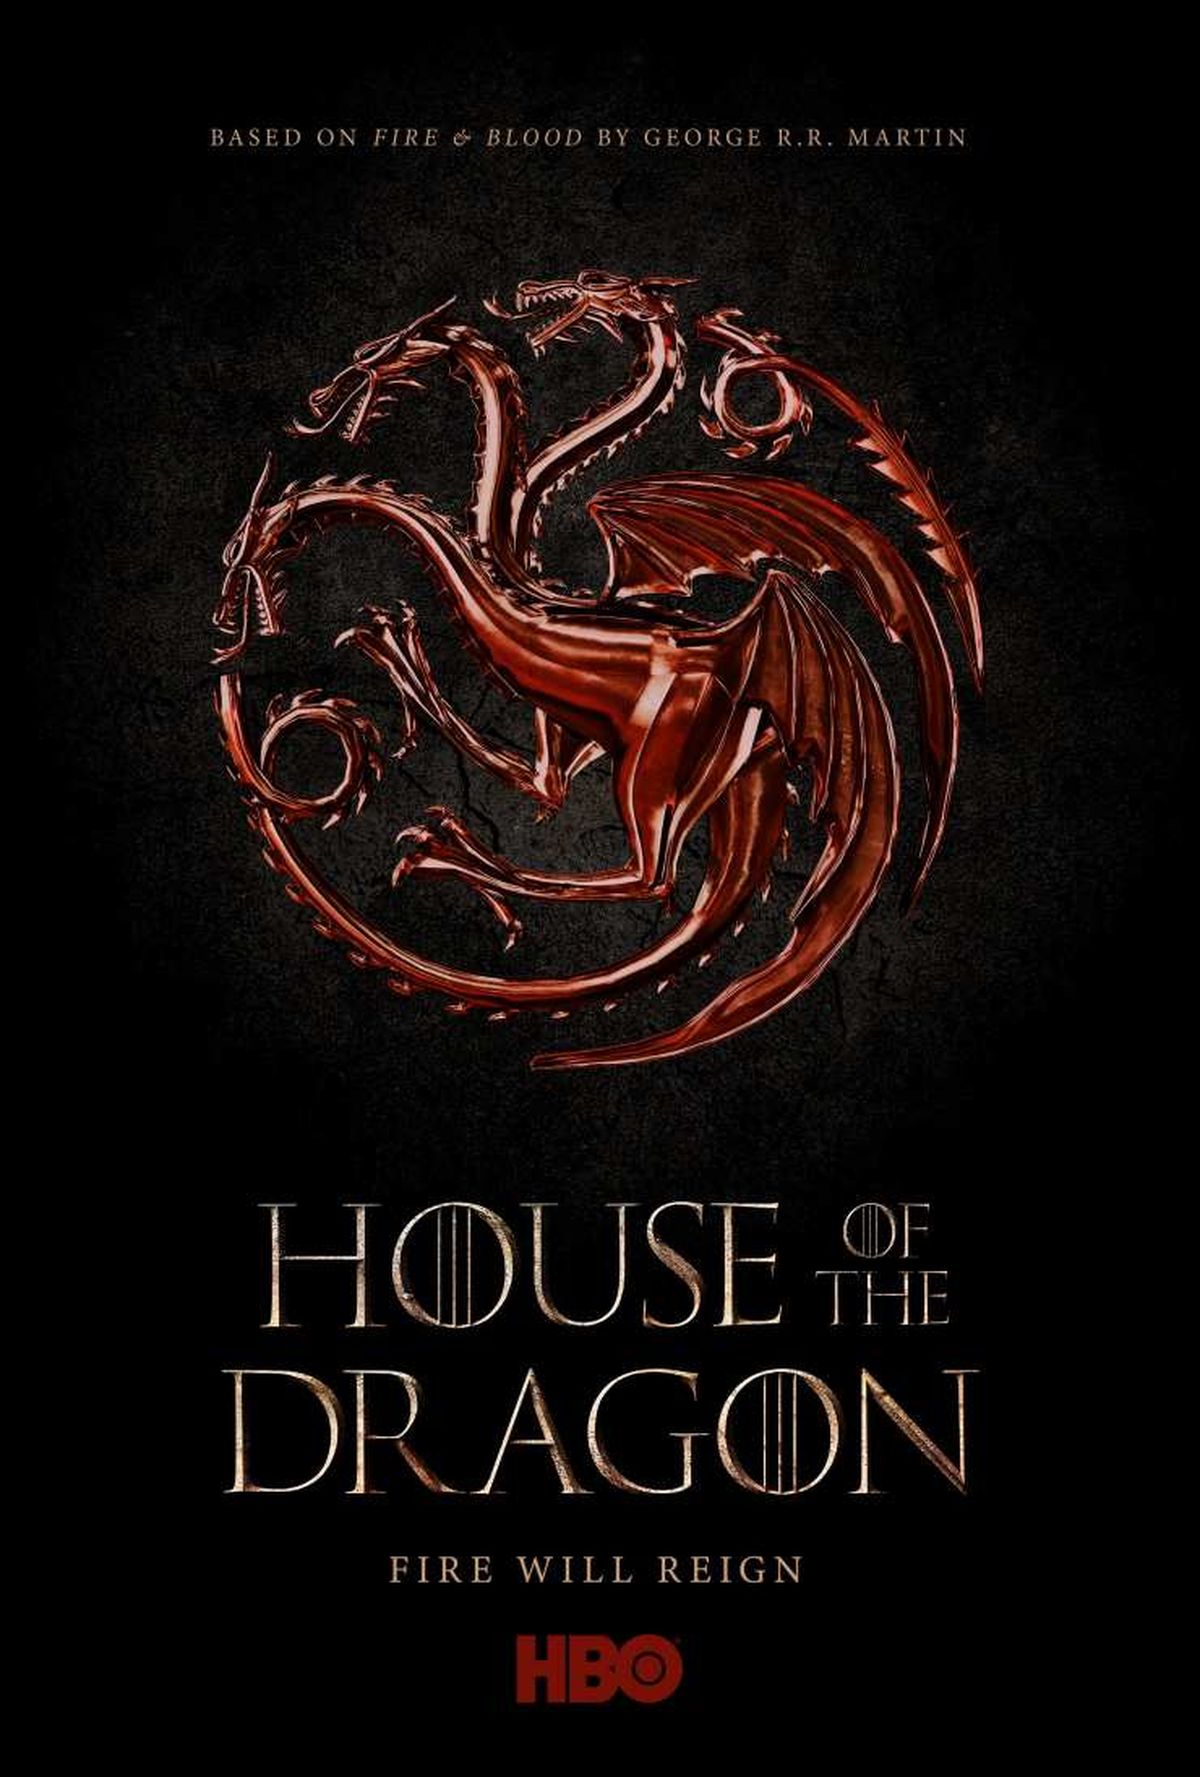 La casa del dragón: el suspenso se eleva - Crítica del Episodio 2